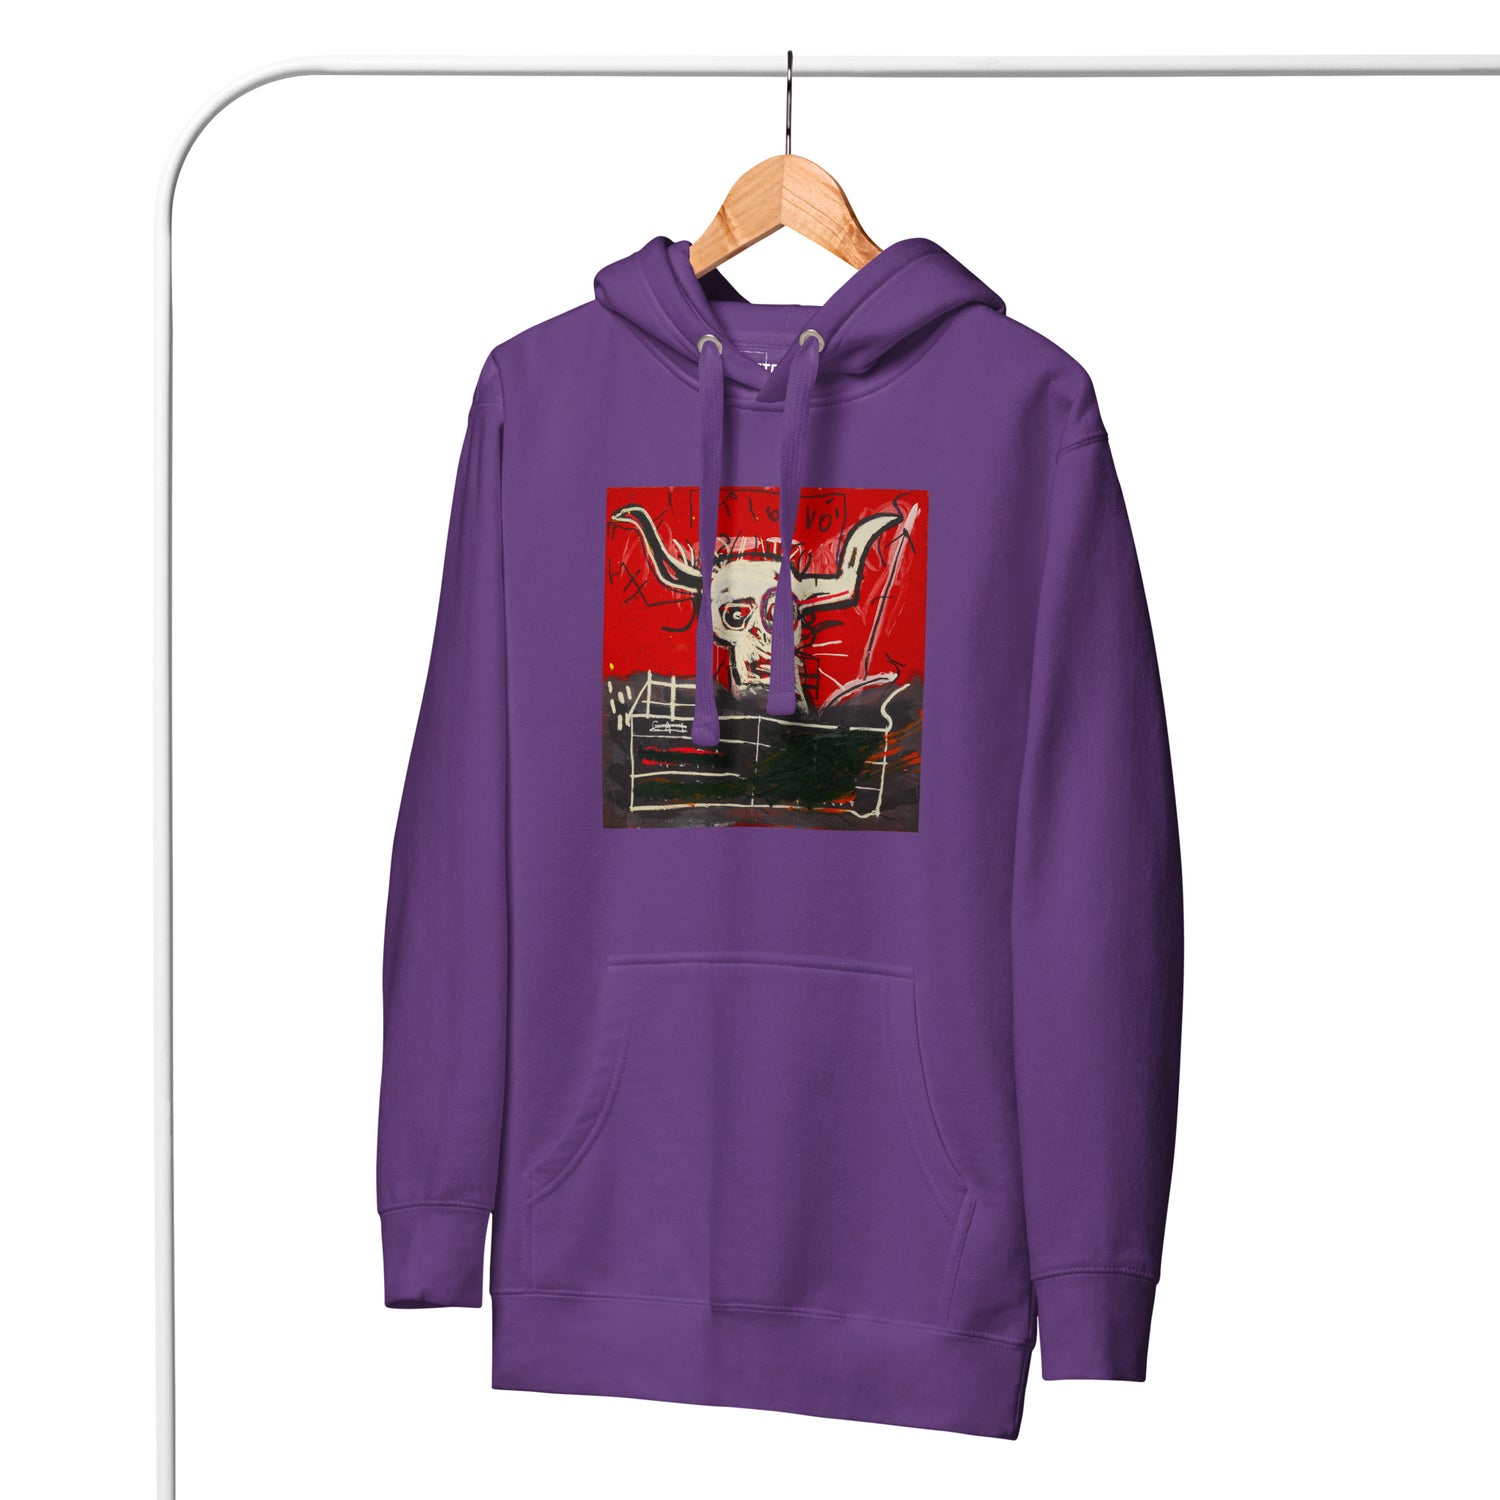 Jean-Michel Basquiat "Cabra" Artwork Printed Premium Streetwear Sweatshirt Hoodie Purple